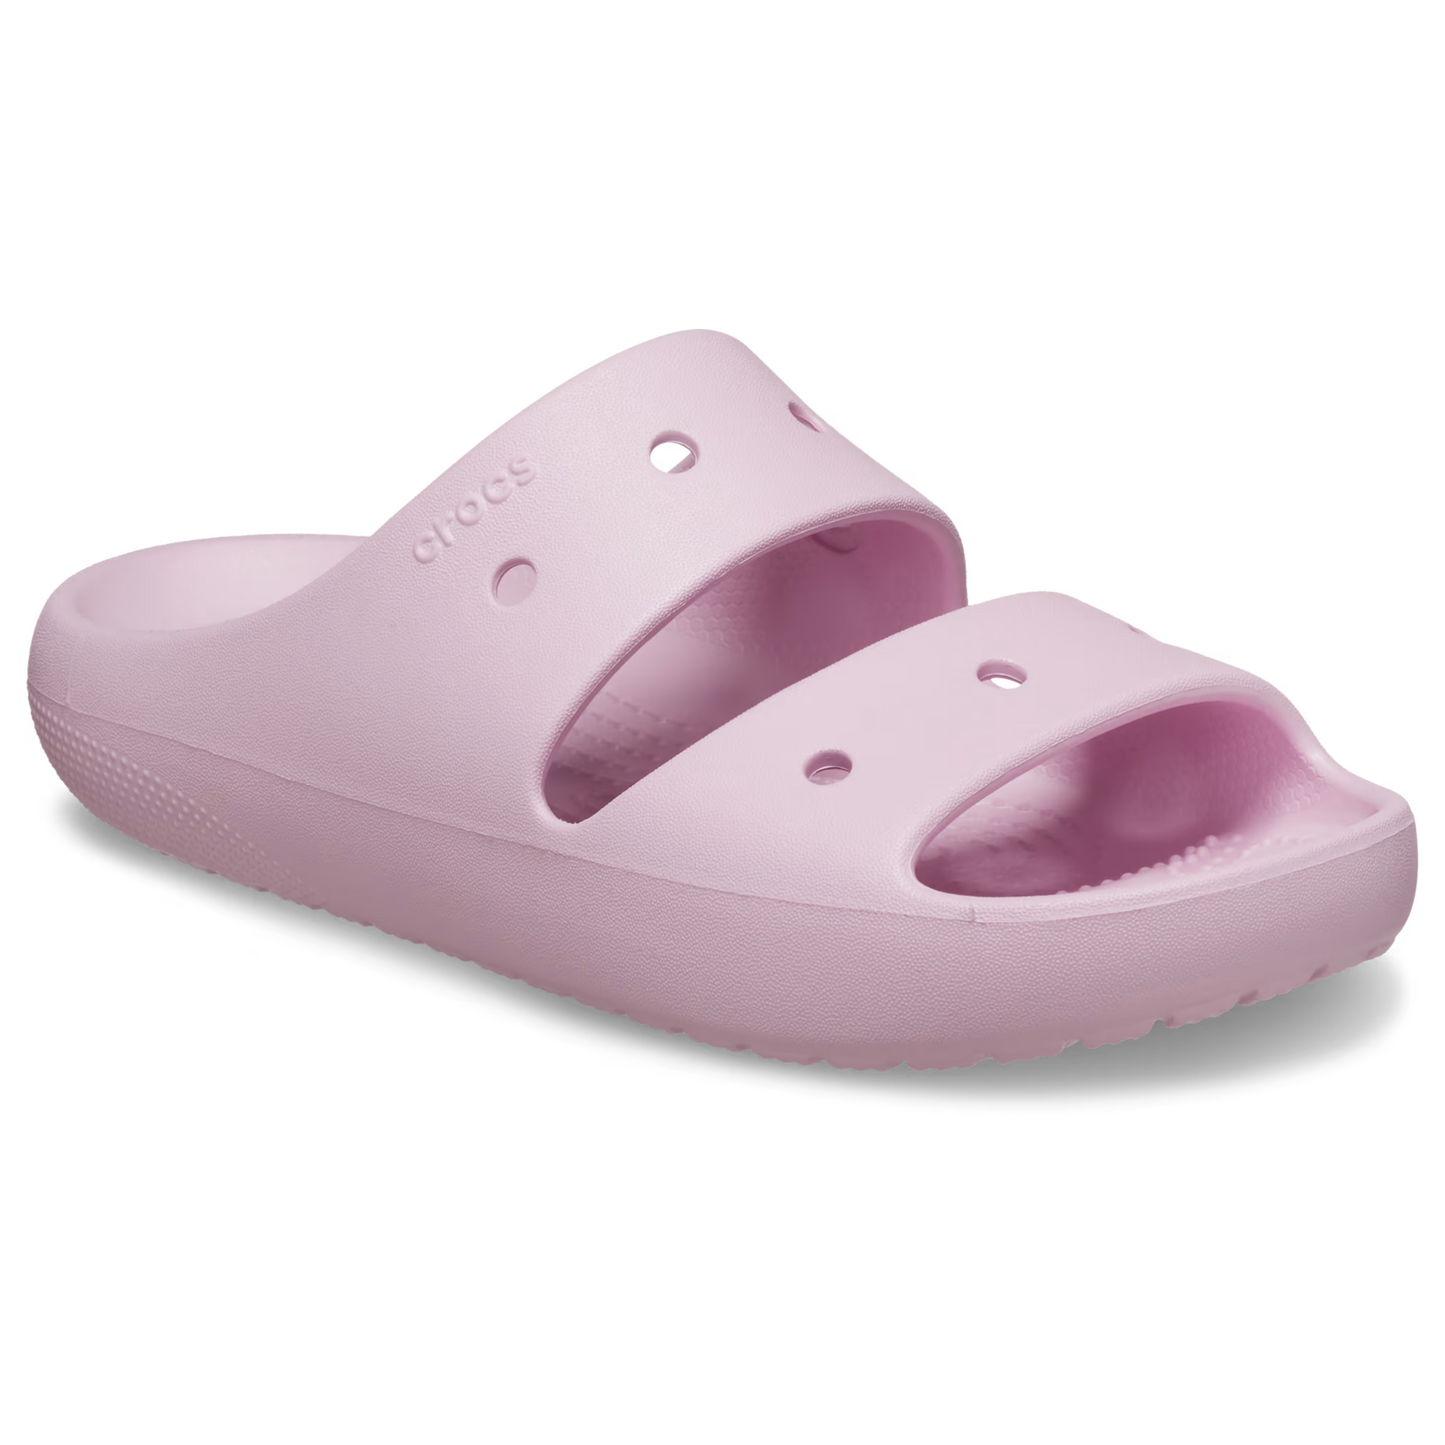 Crocs Classic Sandal 2.0